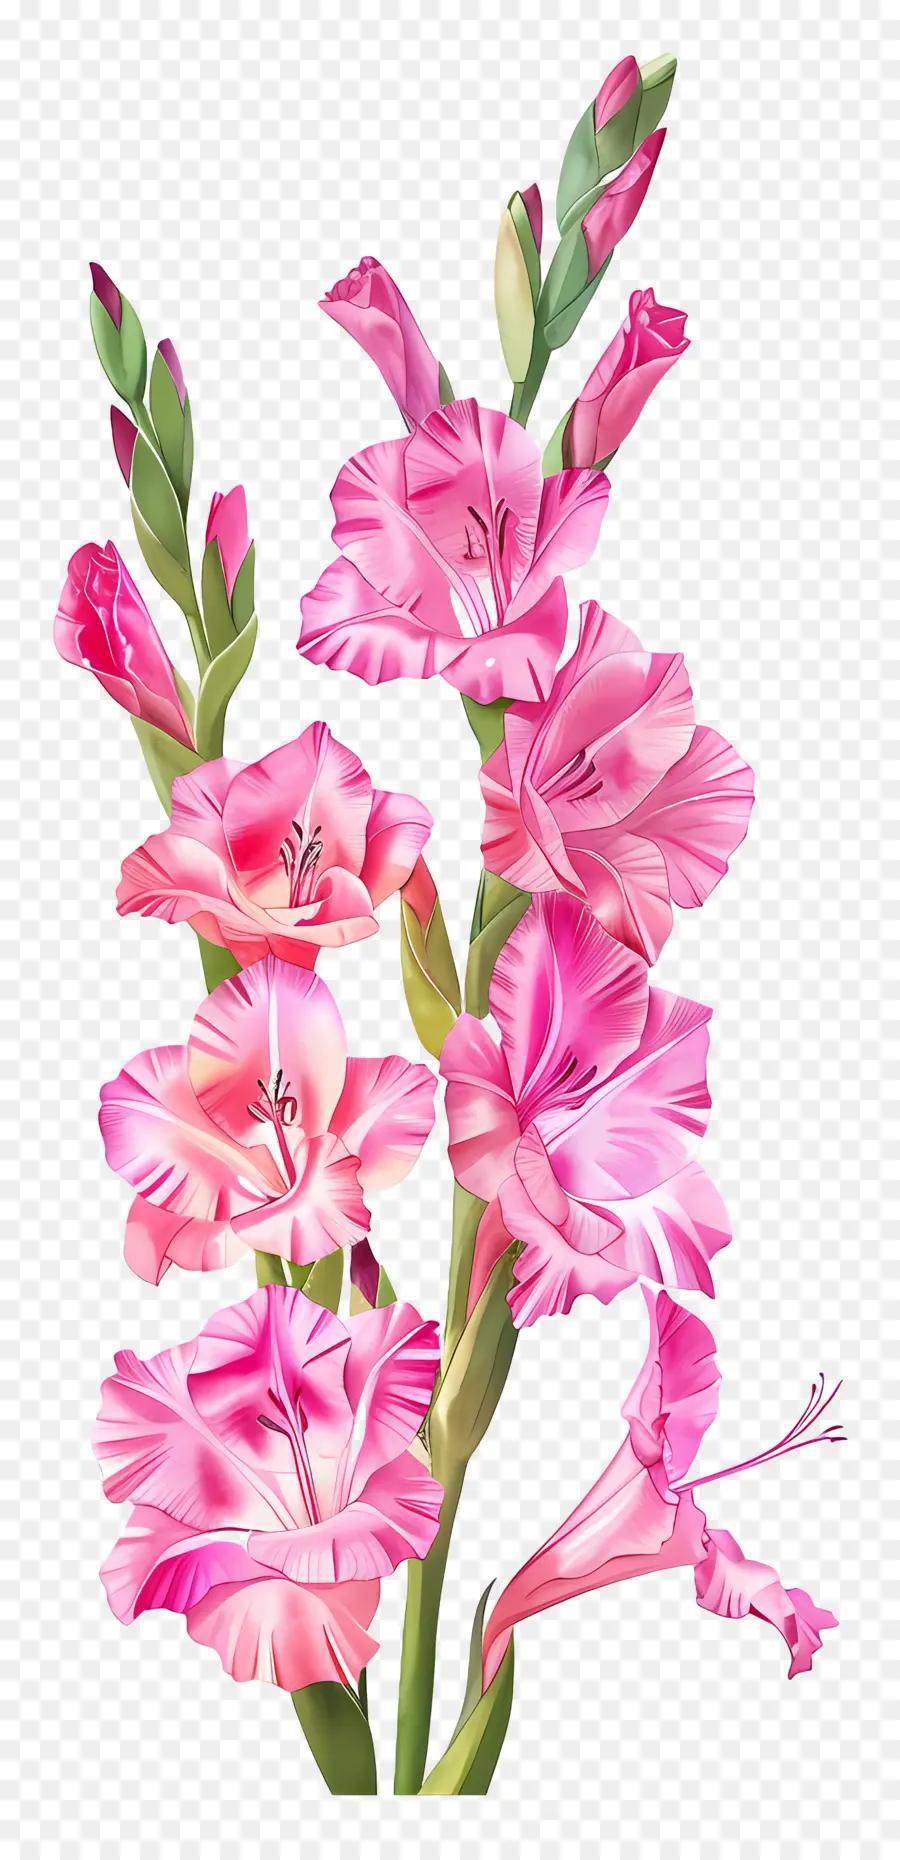 Daisy - Pink Wildblumen in voller Blüte, schwarzer Hintergrund